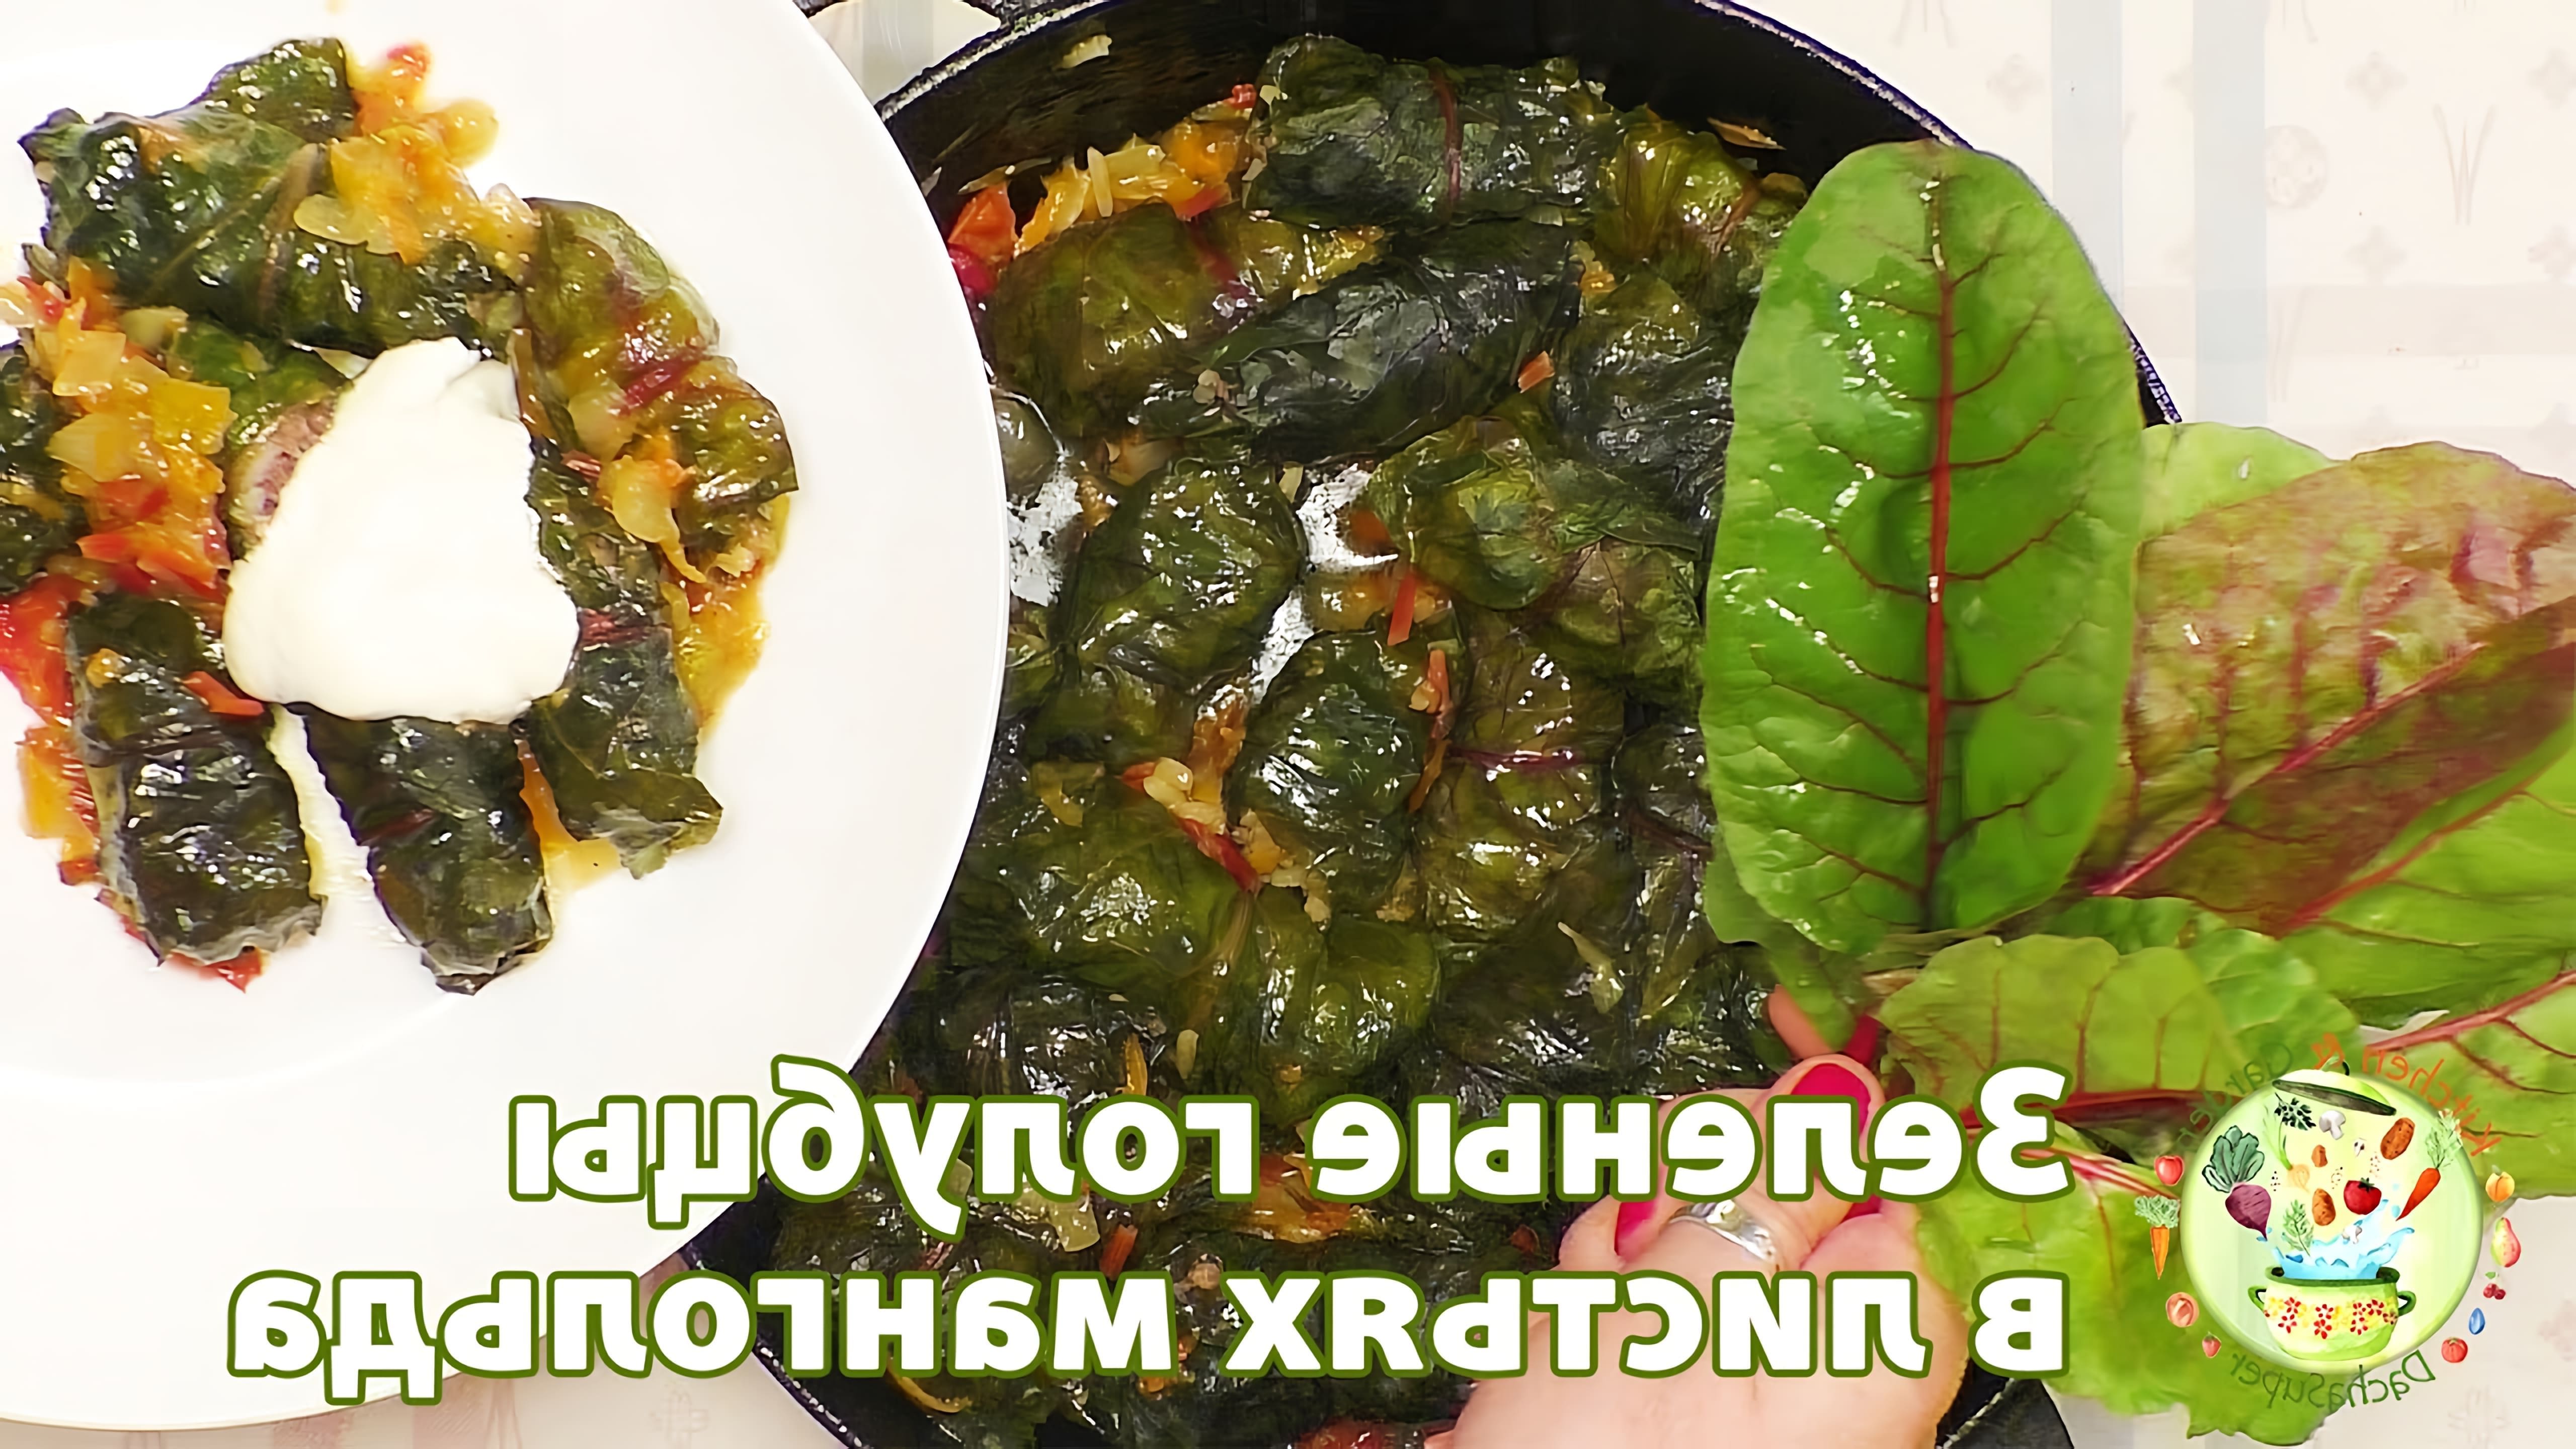 В этом видео демонстрируется рецепт приготовления зеленых голубцов в листьях мангольда